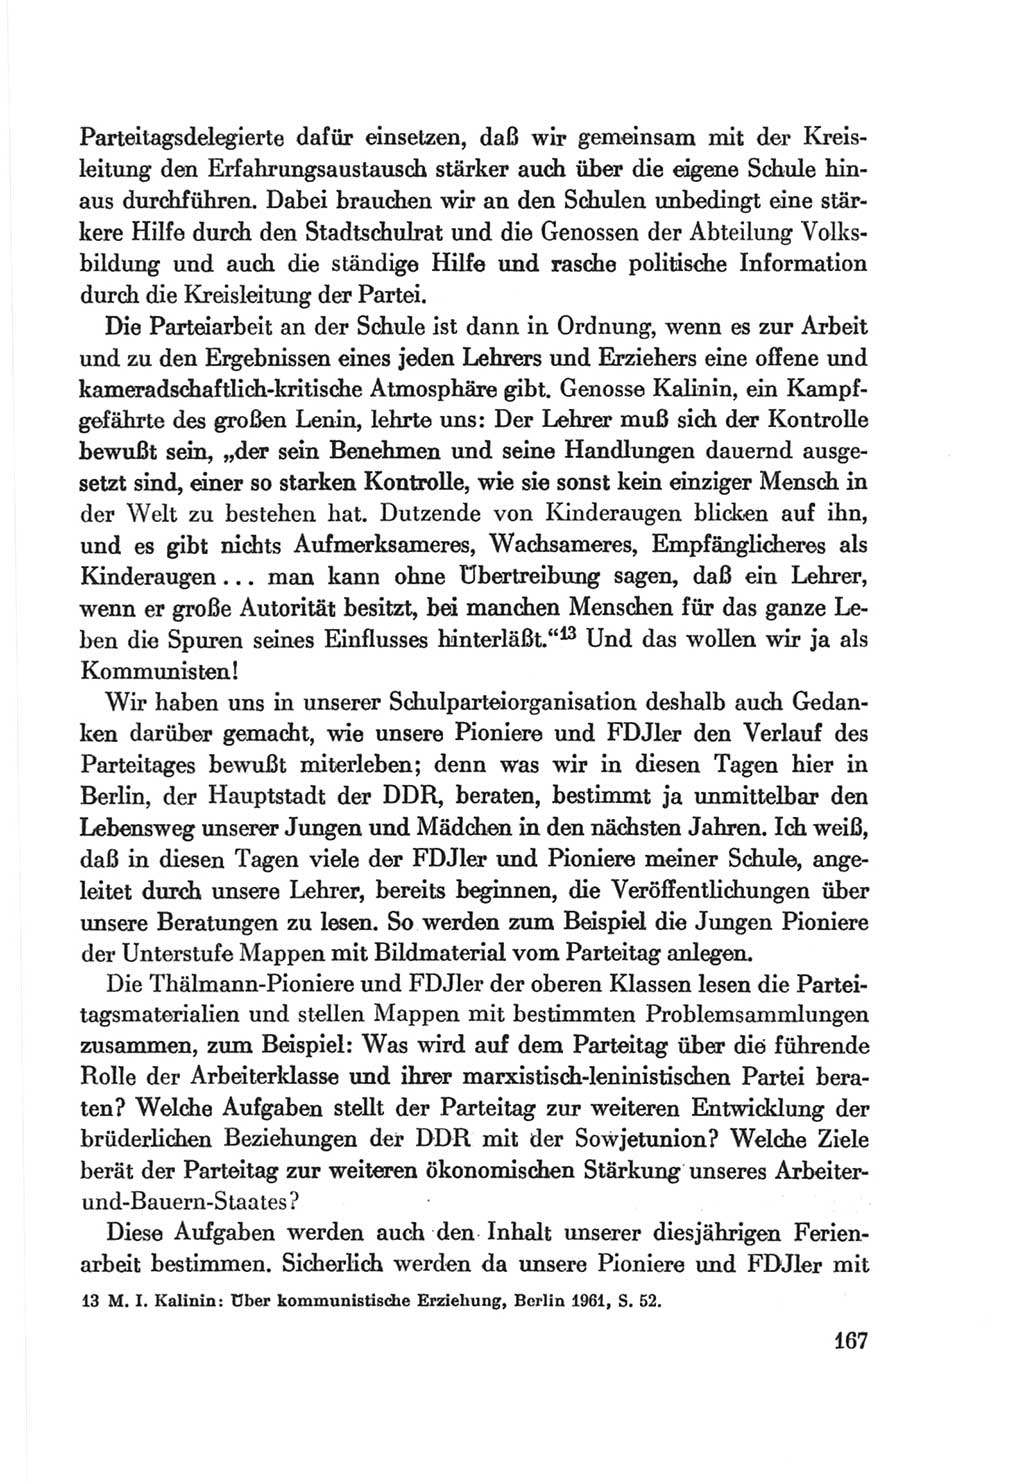 Protokoll der Verhandlungen des Ⅷ. Parteitages der Sozialistischen Einheitspartei Deutschlands (SED) [Deutsche Demokratische Republik (DDR)] 1971, Band 1, Seite 167 (Prot. Verh. Ⅷ. PT SED DDR 1971, Bd. 1, S. 167)